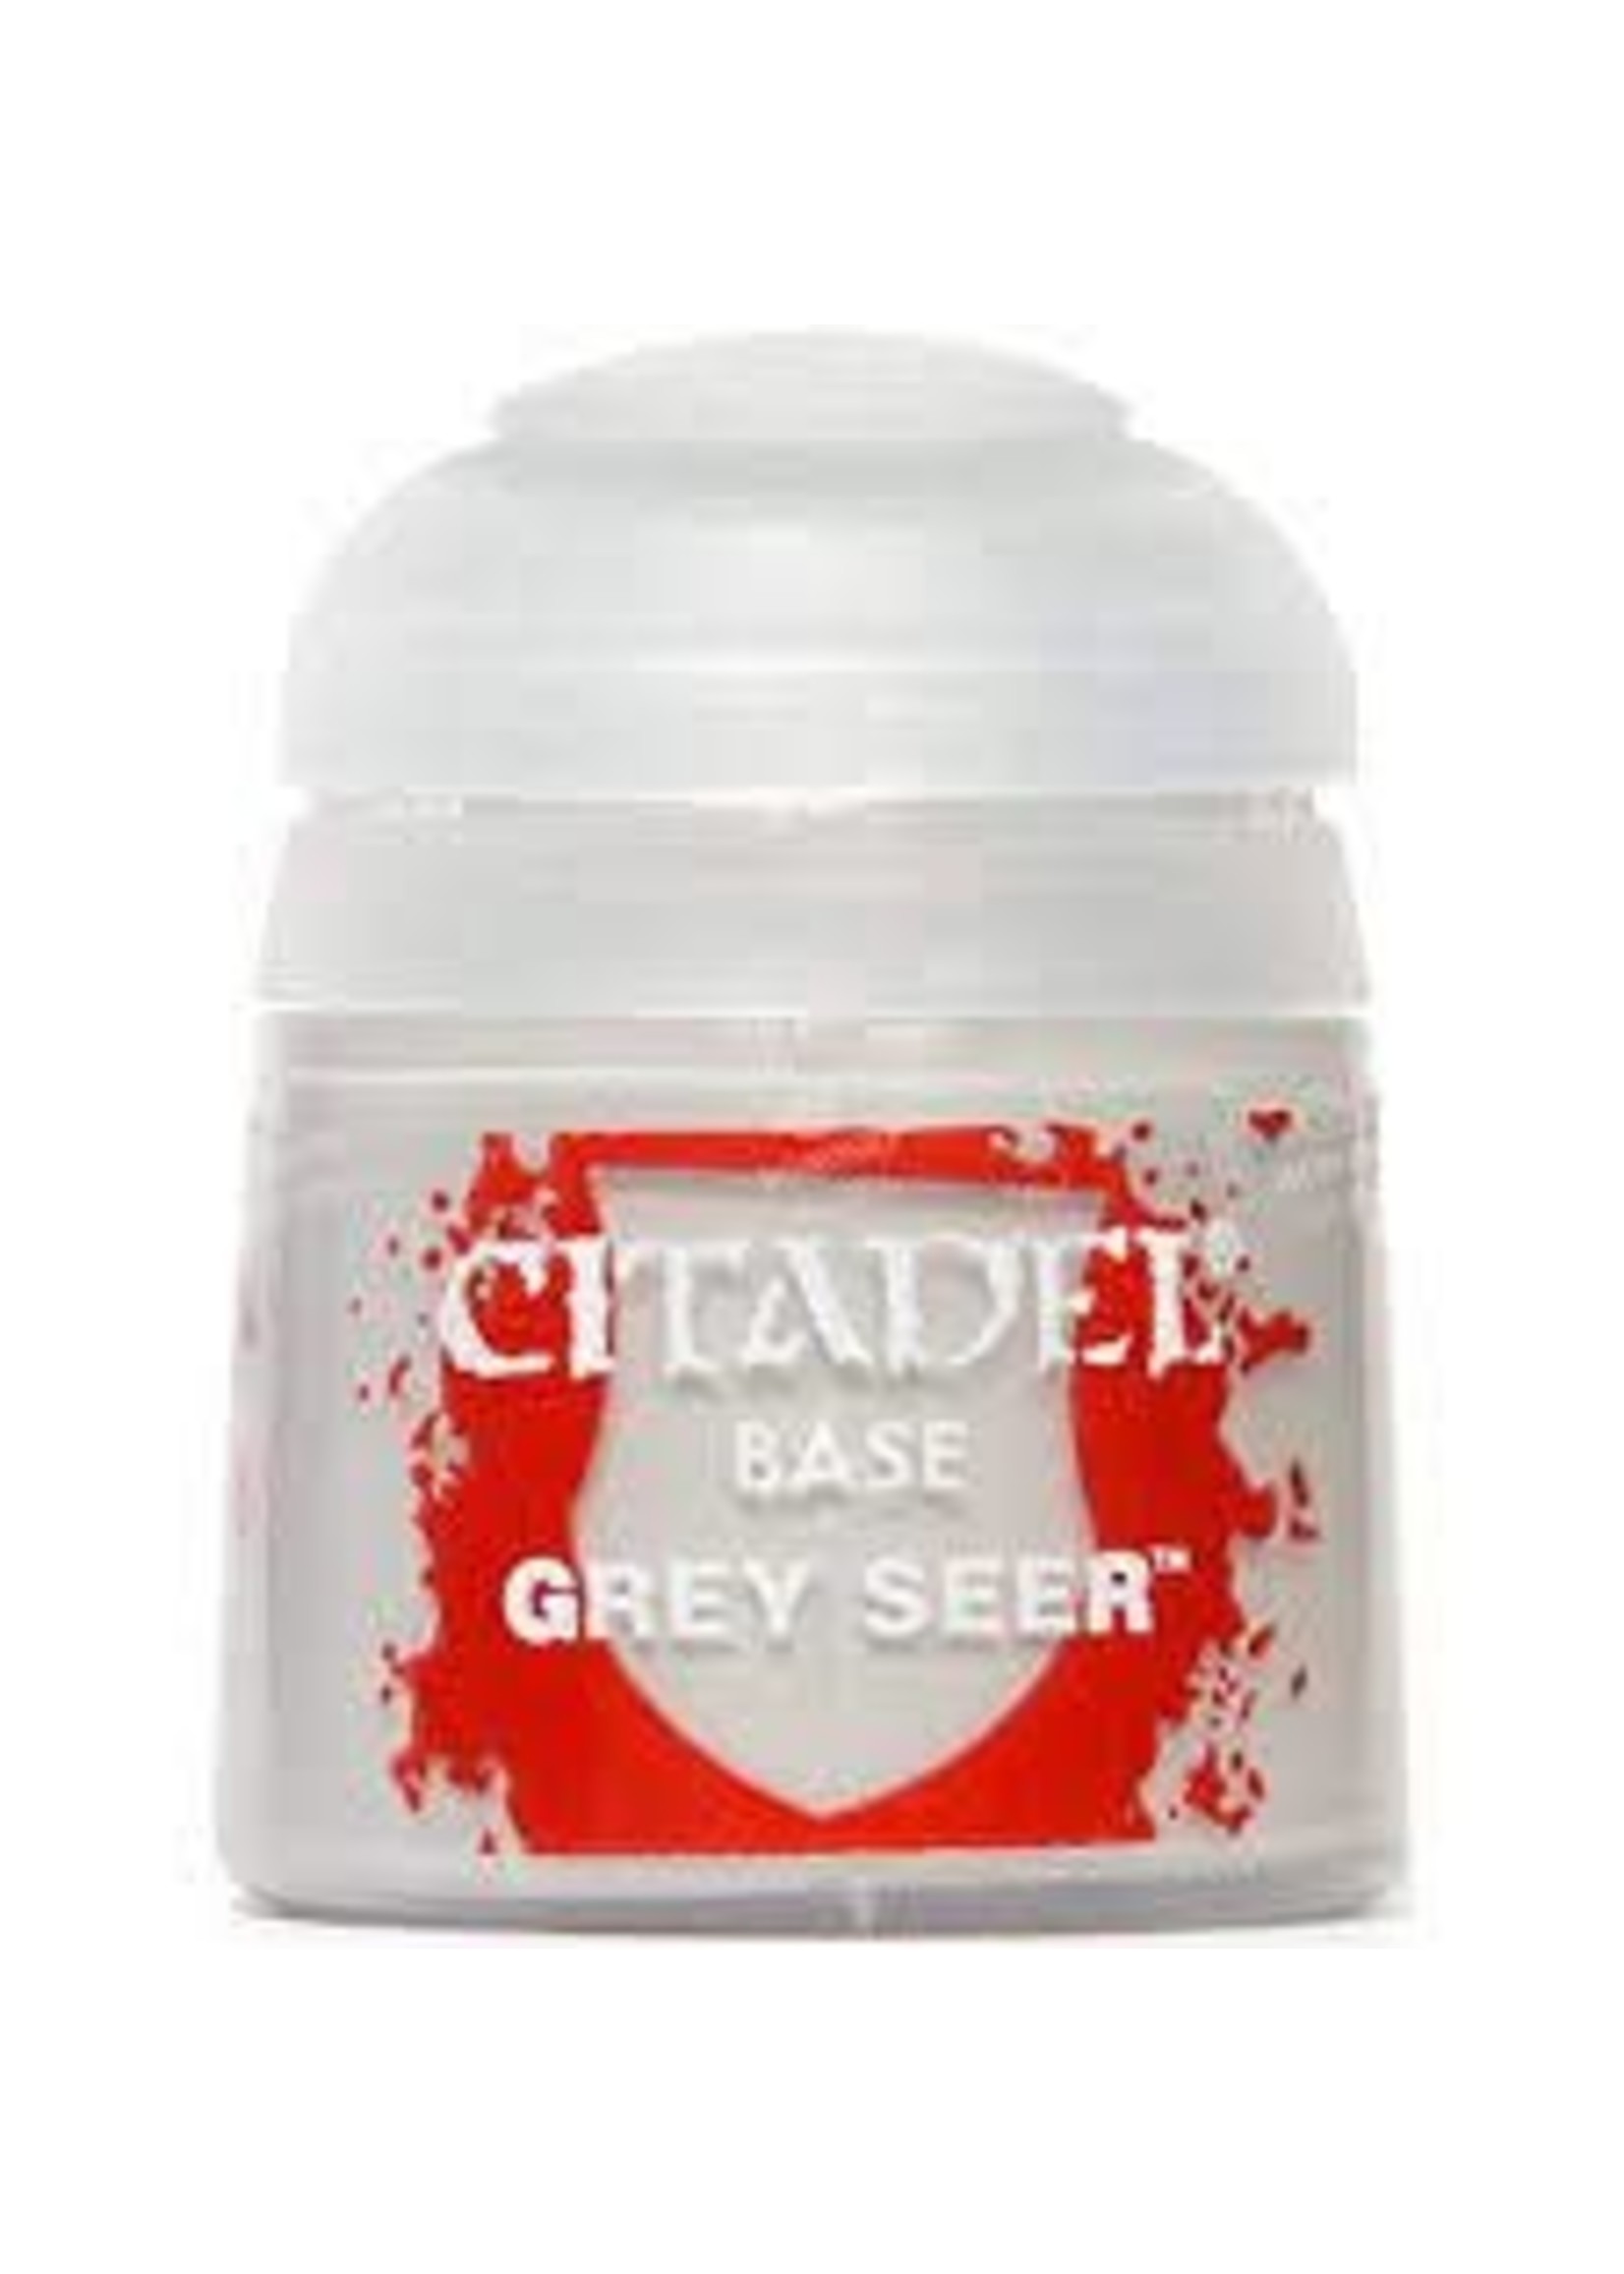 Citadel grey Seer